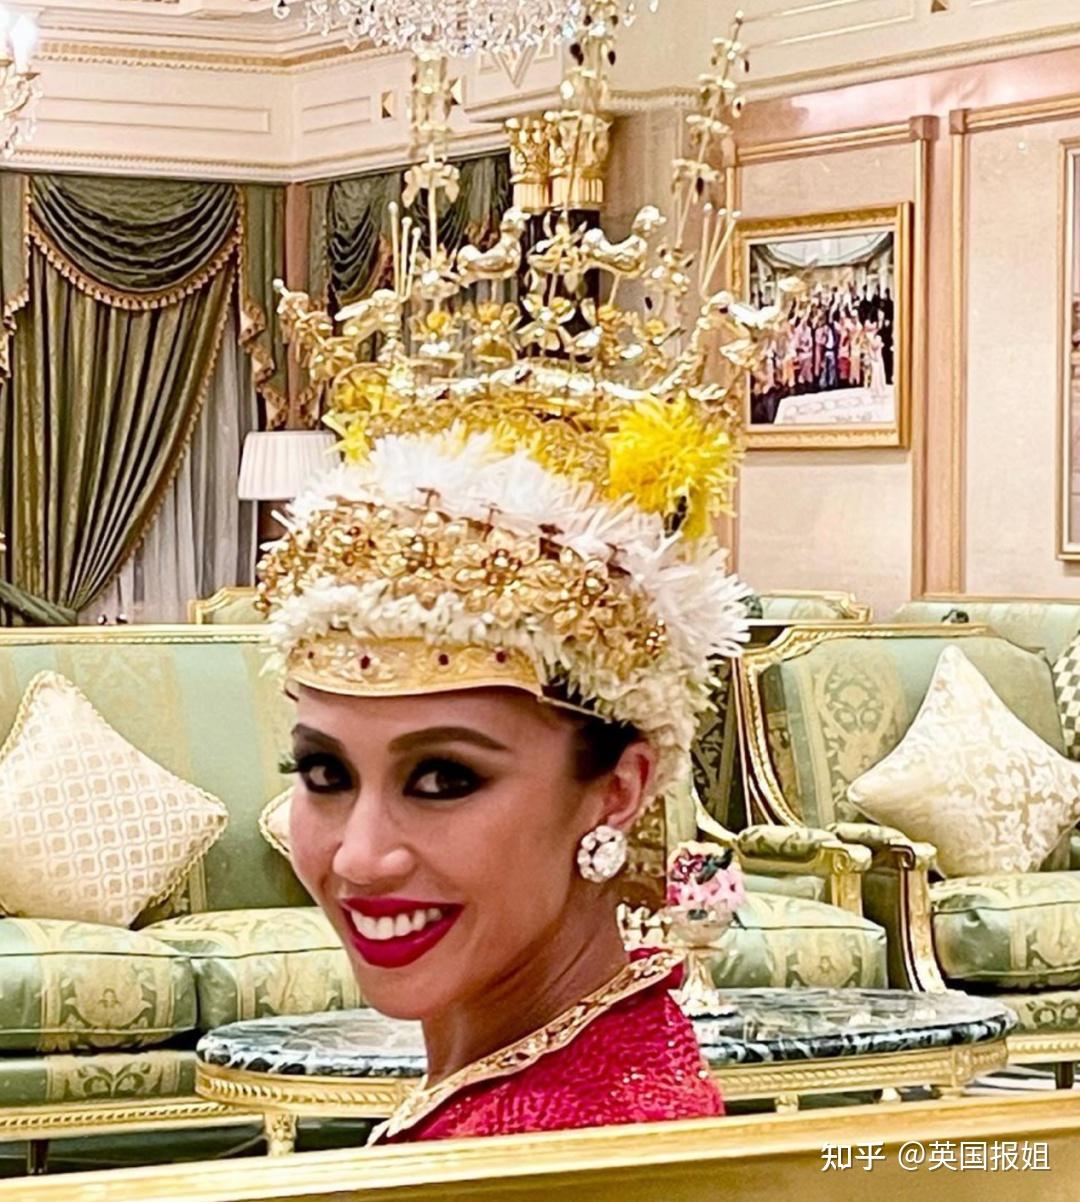 文莱王子迎娶青梅竹马 王冠出自新加坡珠宝品牌 - 8world Entertainment Lifestyle